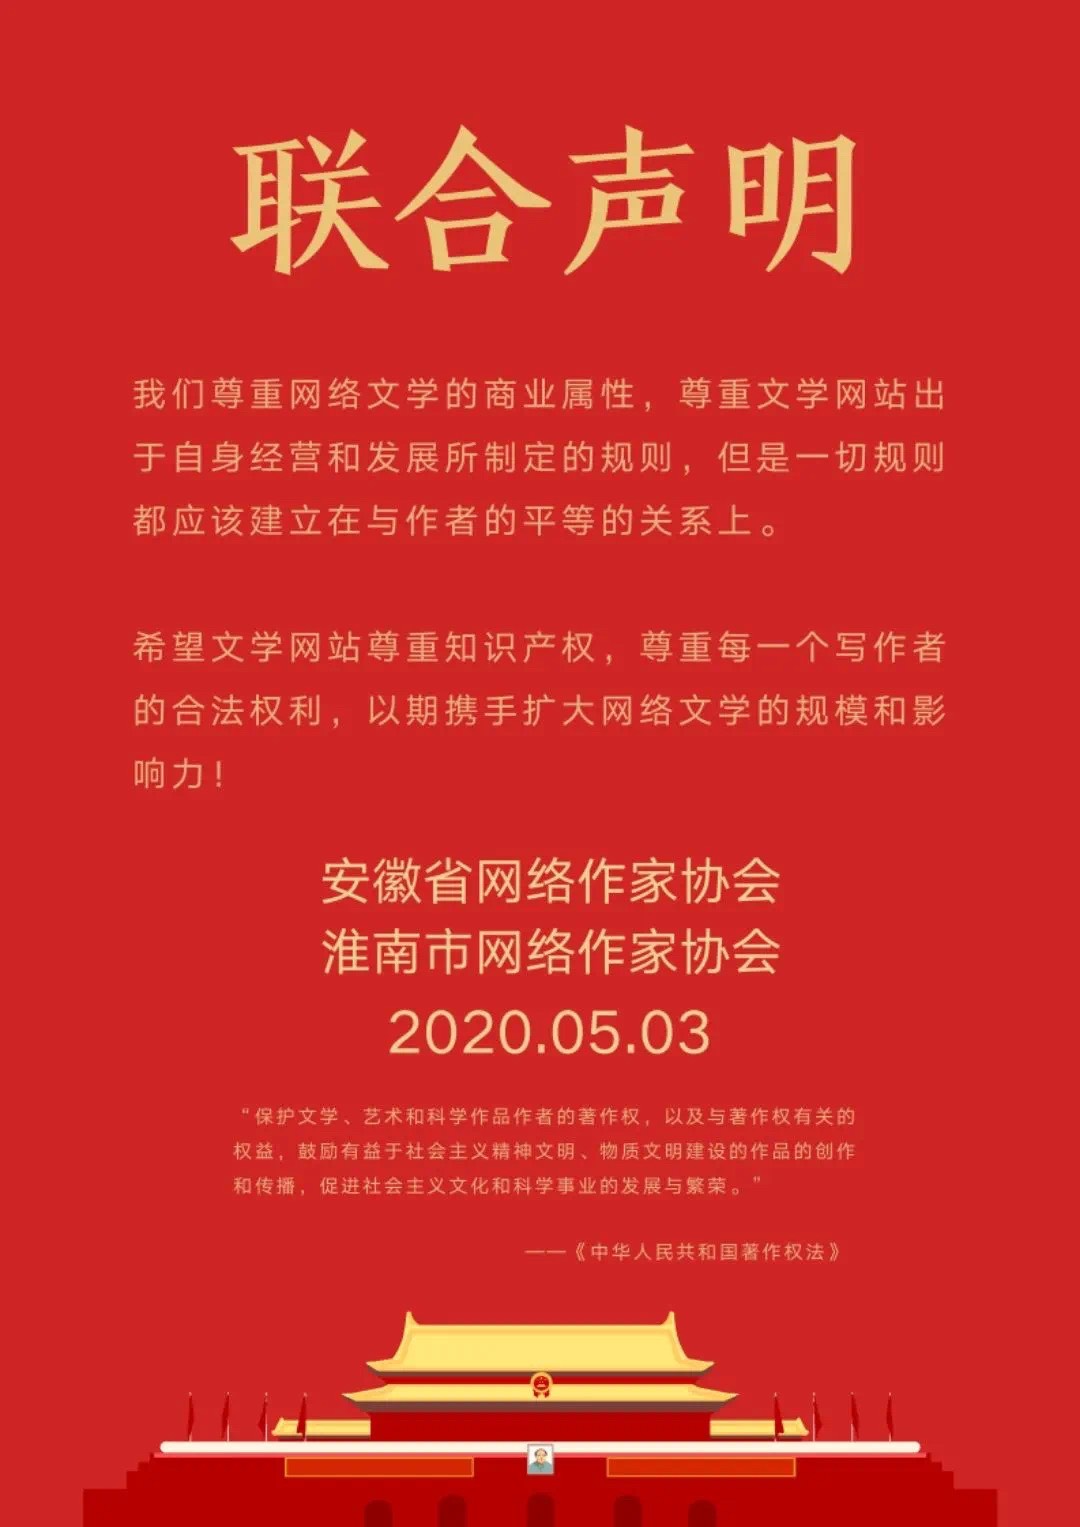 今日(5月4日)，安徽省网络作协、淮南市网络作协就当前网络热议的问题发表联合声明